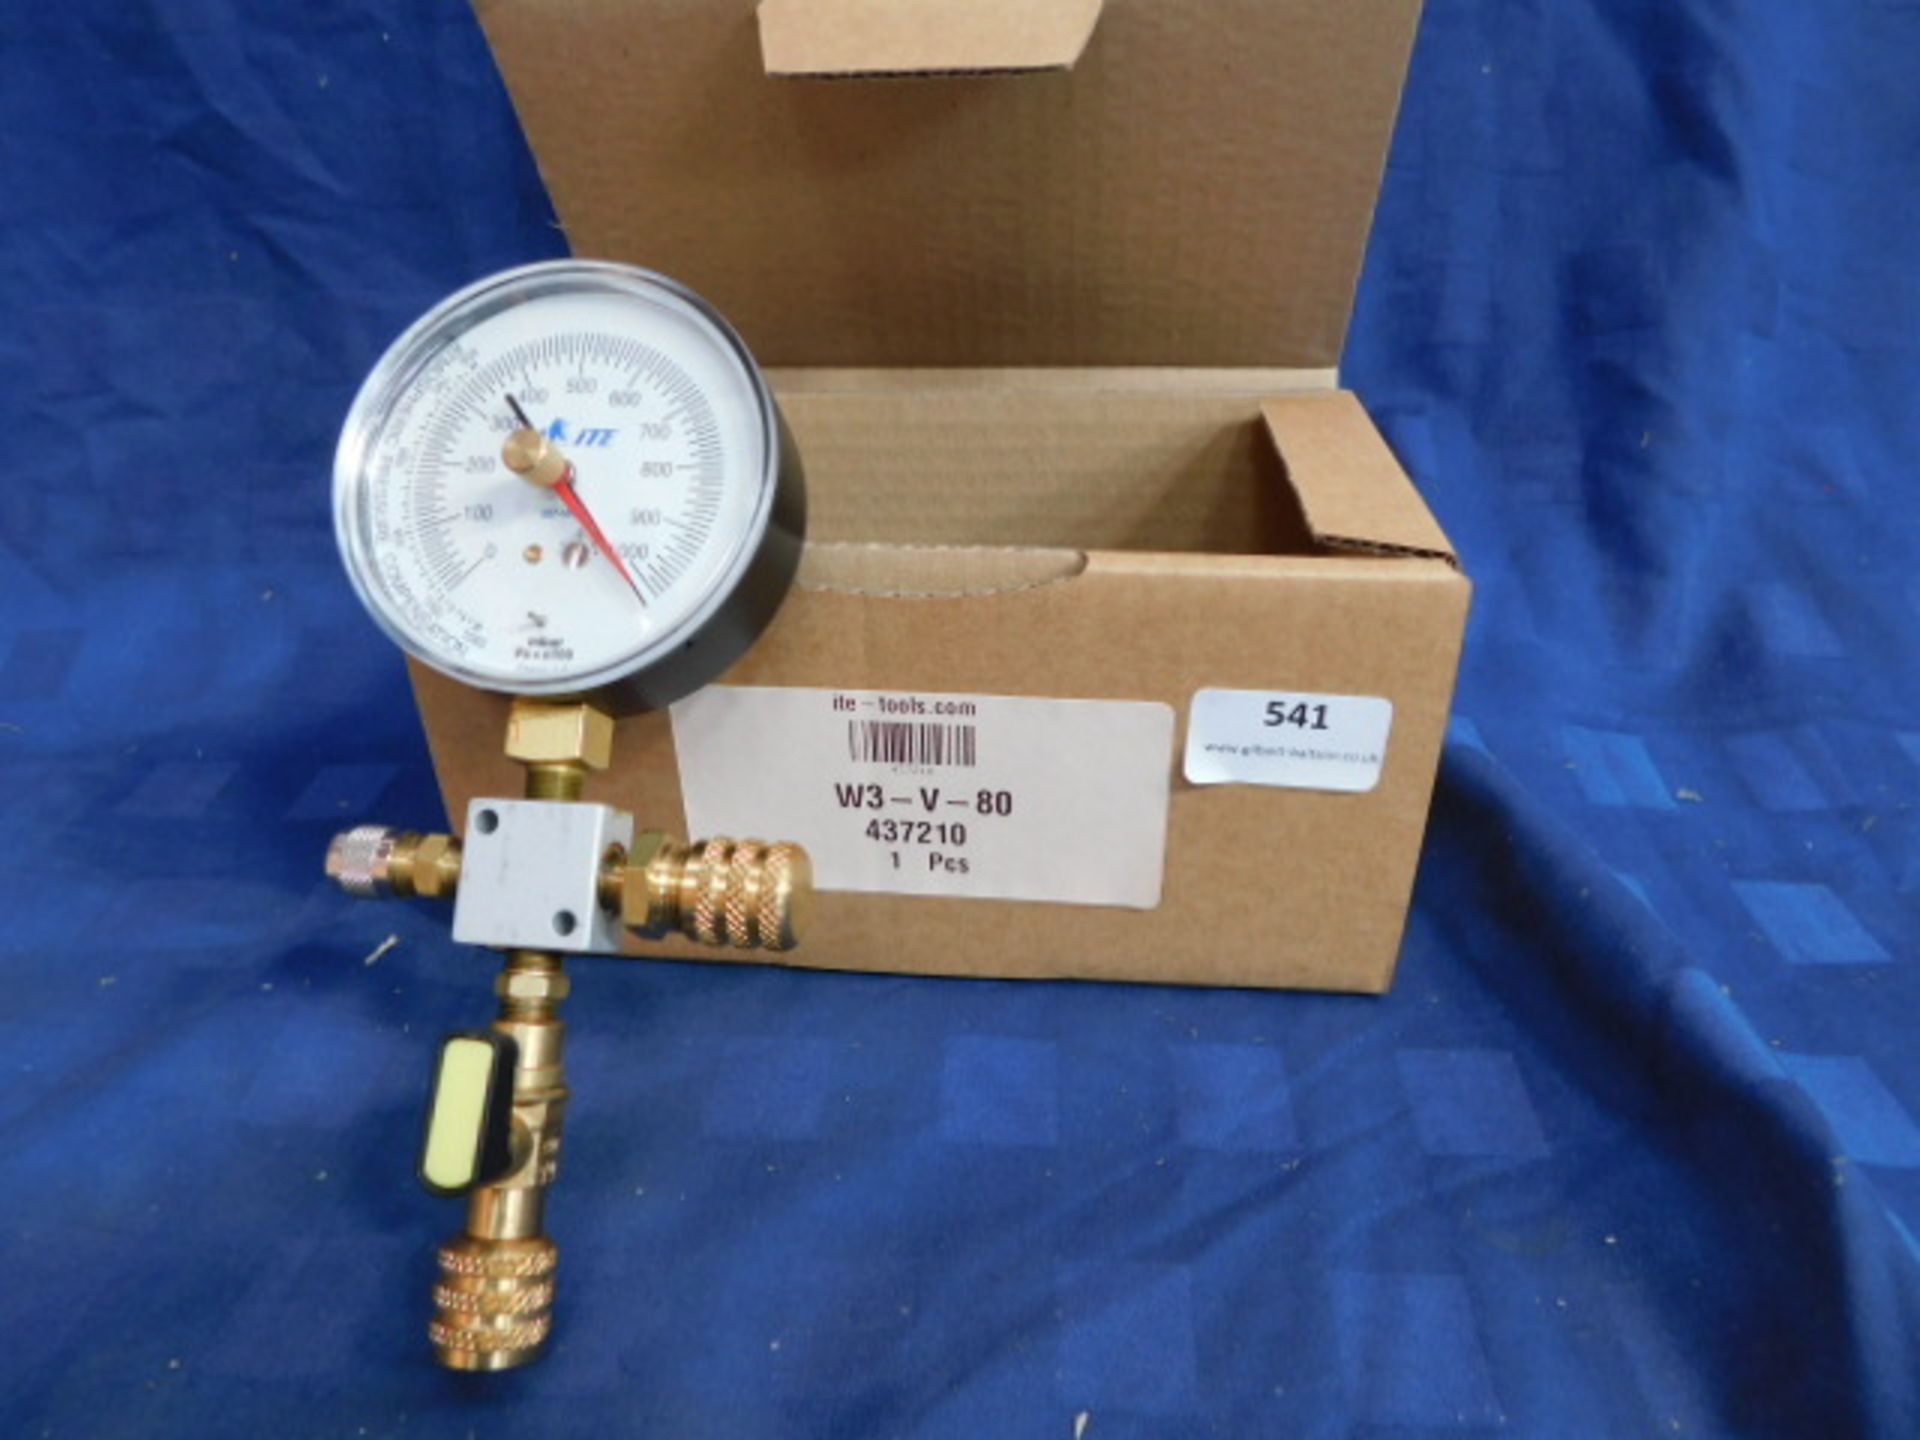 * 8x W3-V-80 3 way isolating valve